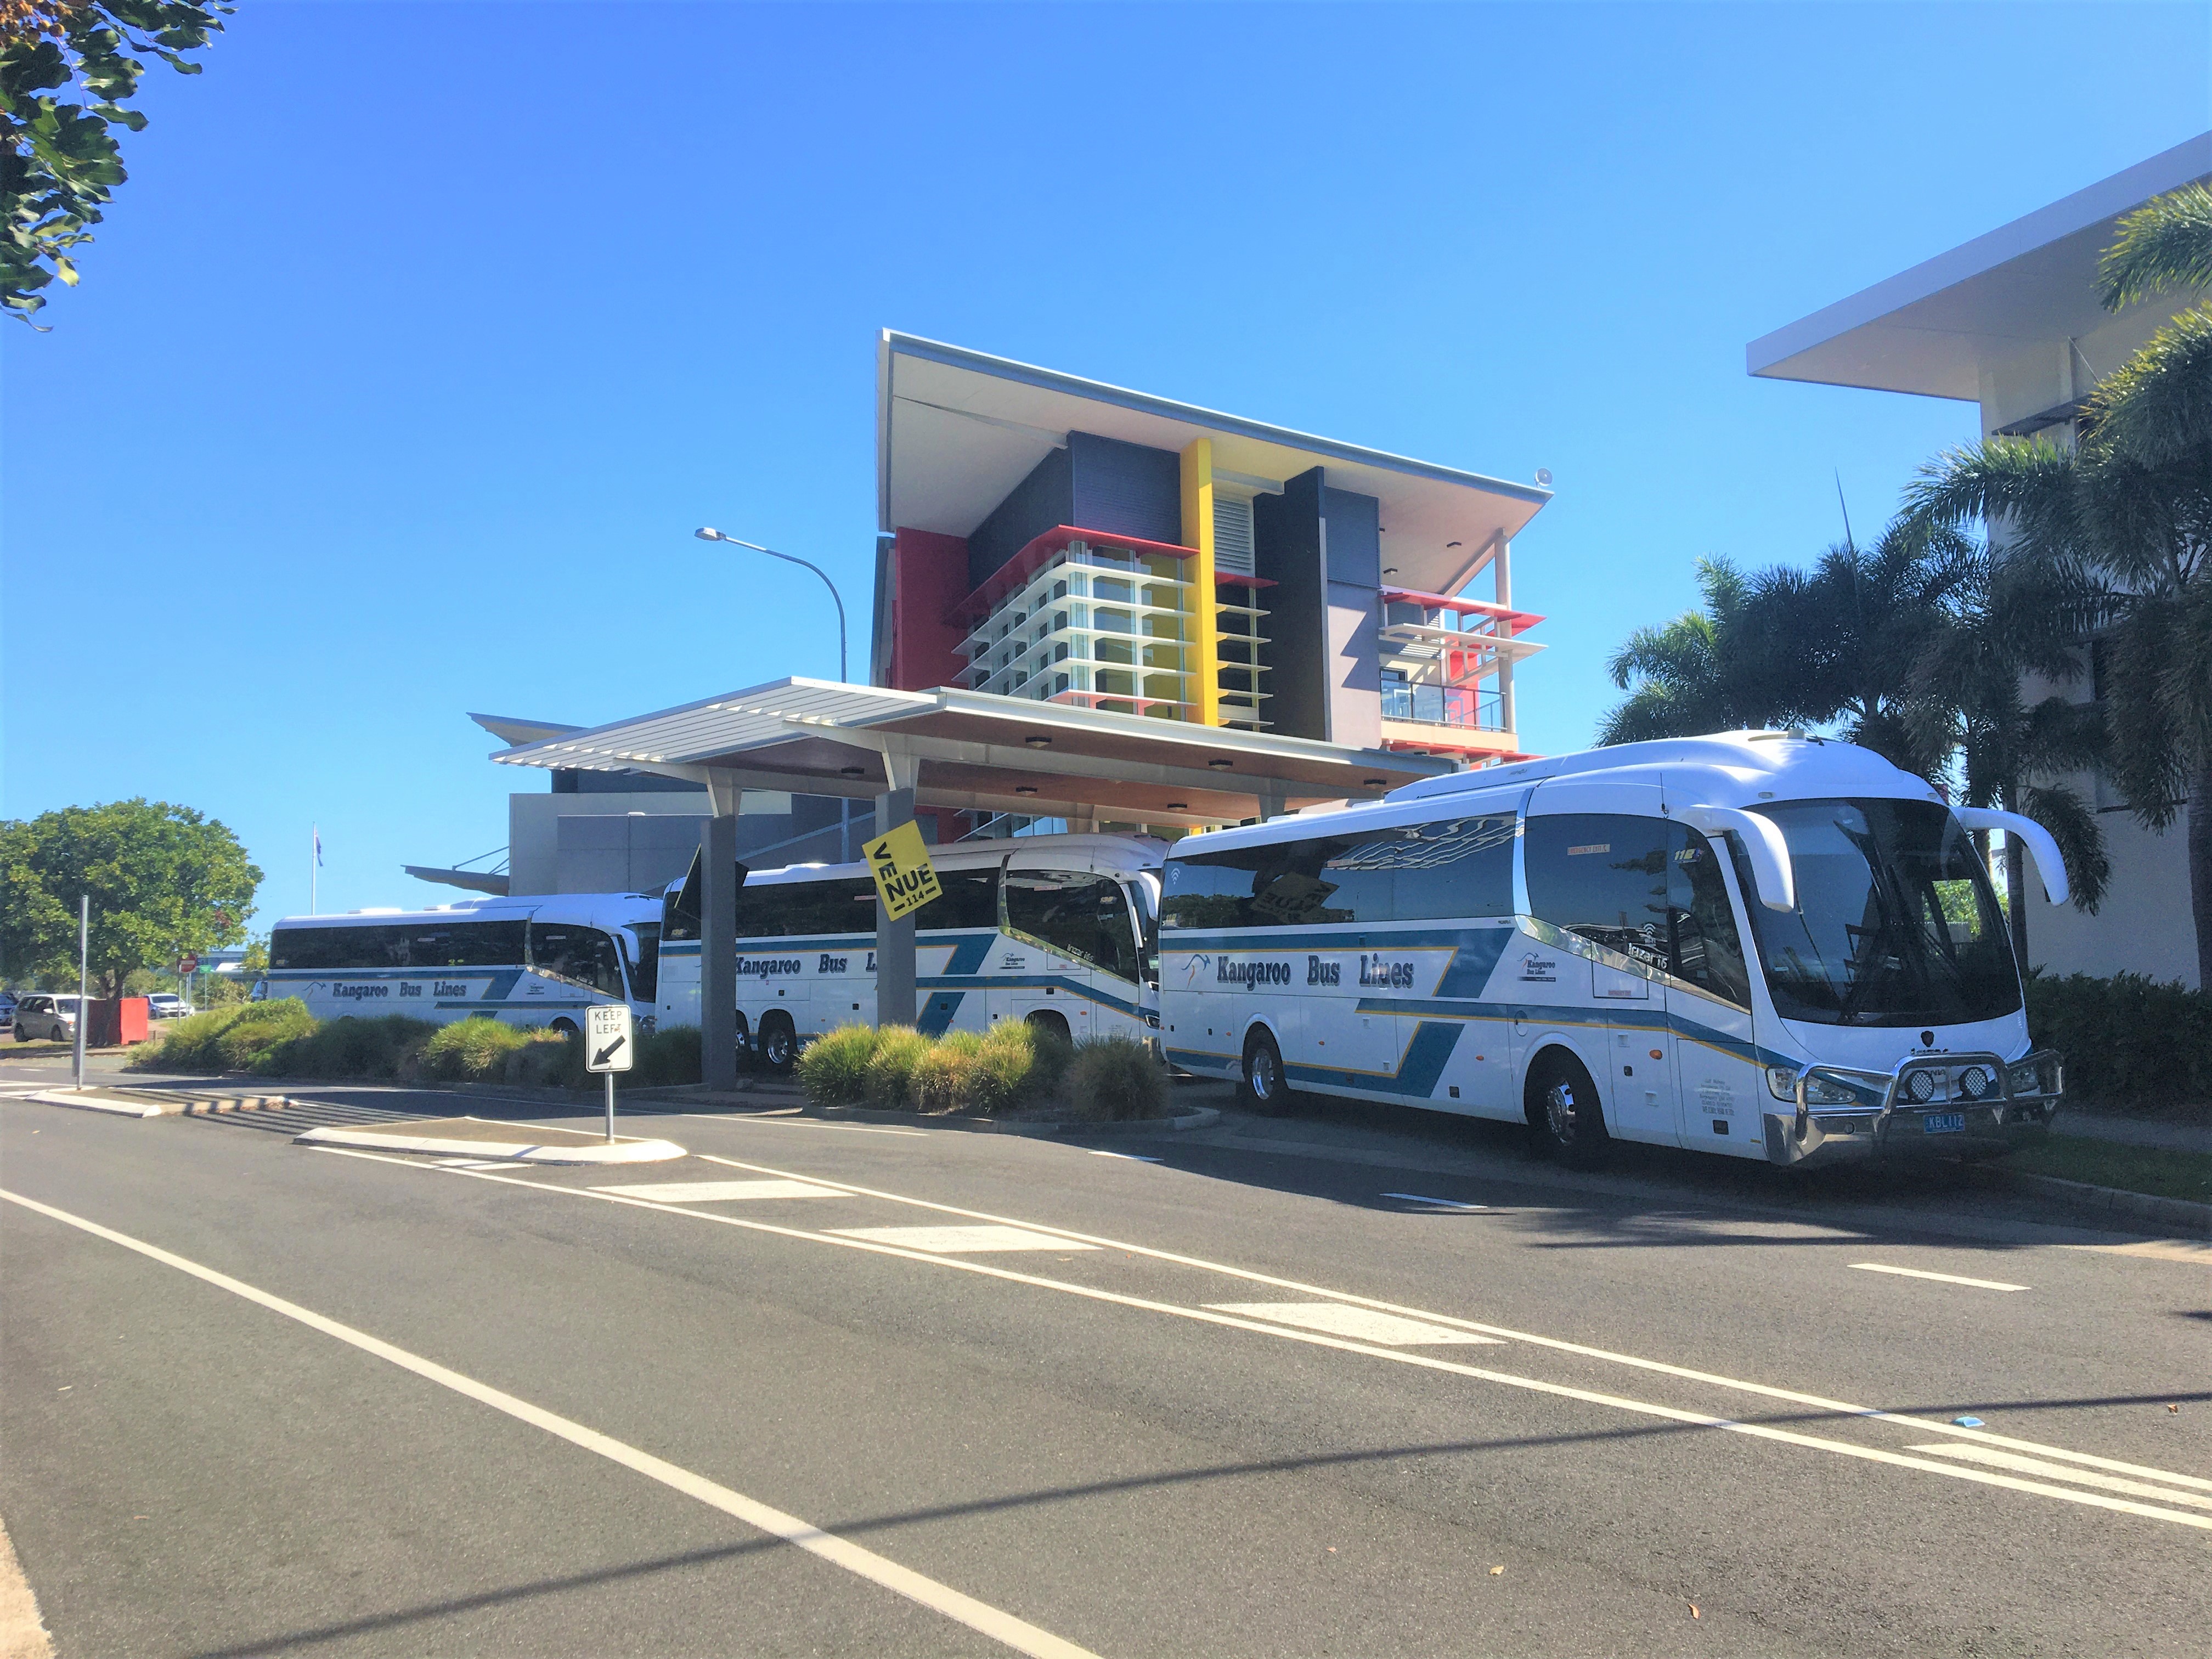 Kangaroo Bus Lines Kunda Park (07) 5445 4741